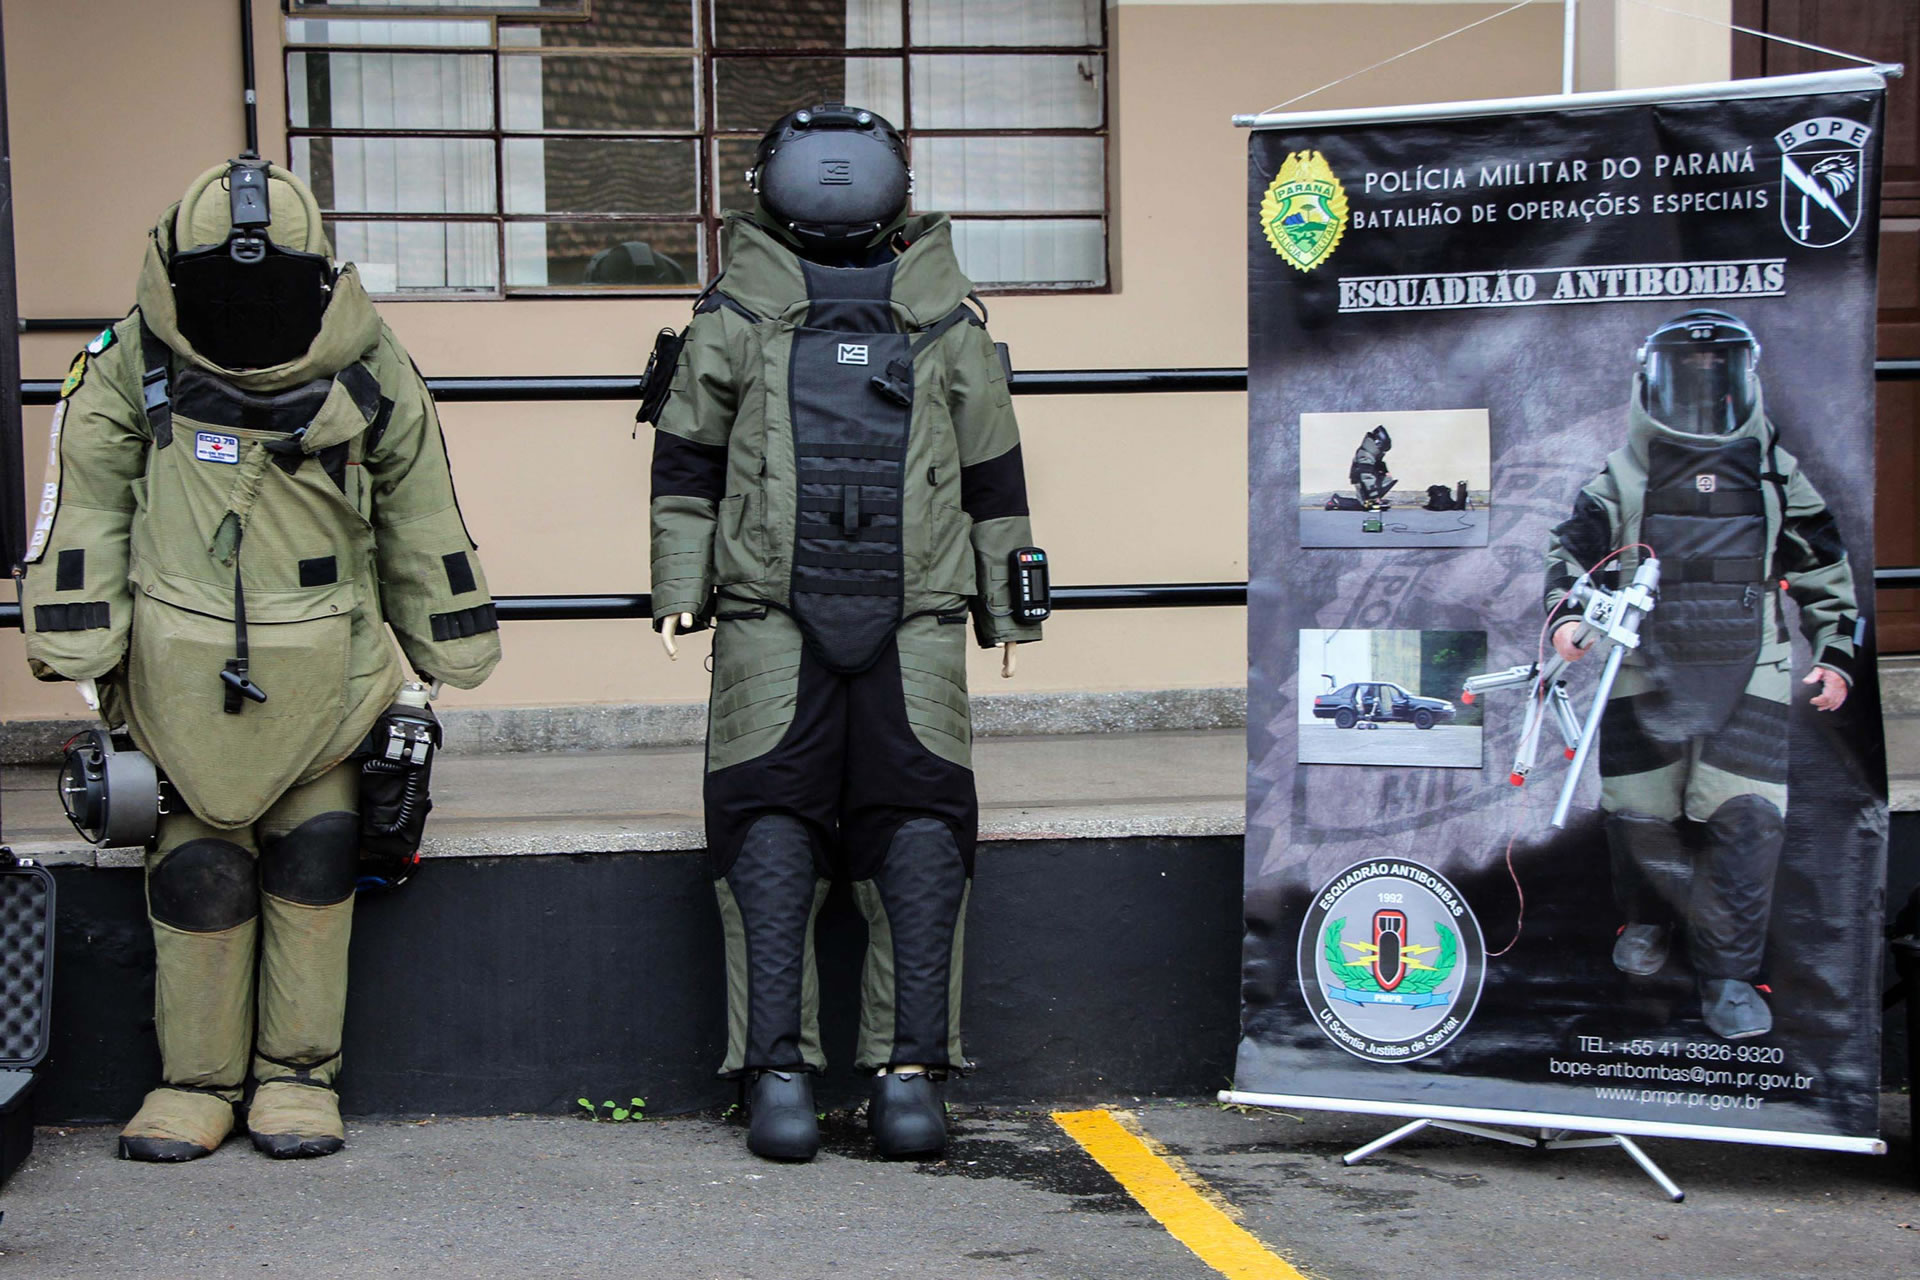 Esquadrão Antibombas do Paraná recebe novos trajes para garantir segurança aos operadores